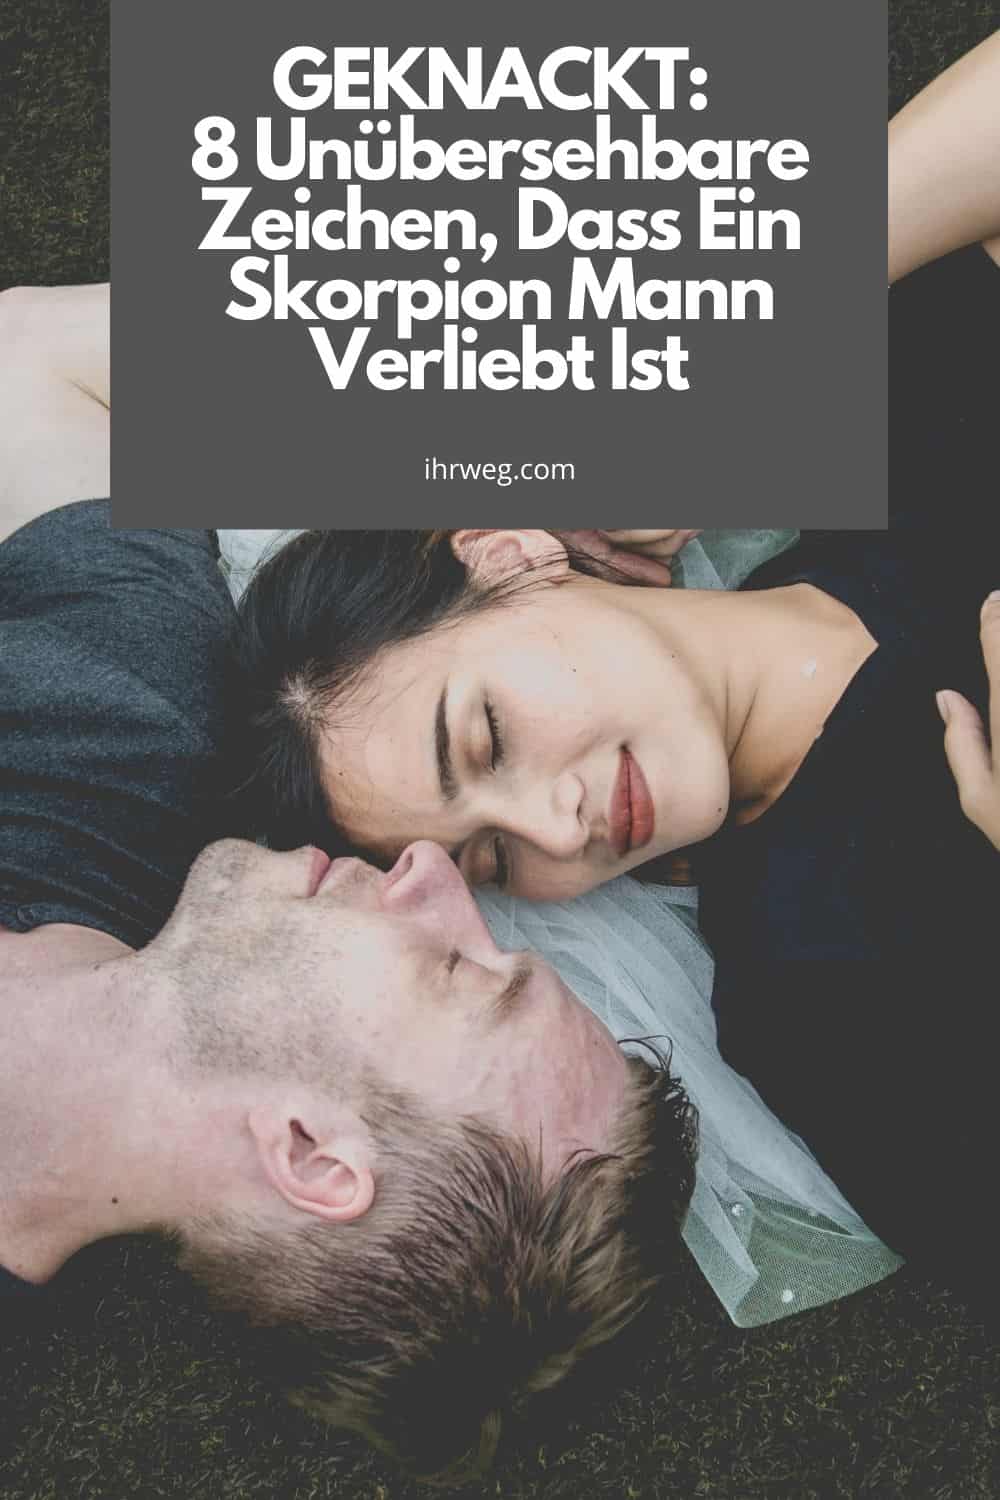 Skorpion Mann erobern - So schaffen Sie es leicht! | freundeskreis-wolfsbrunnen.de